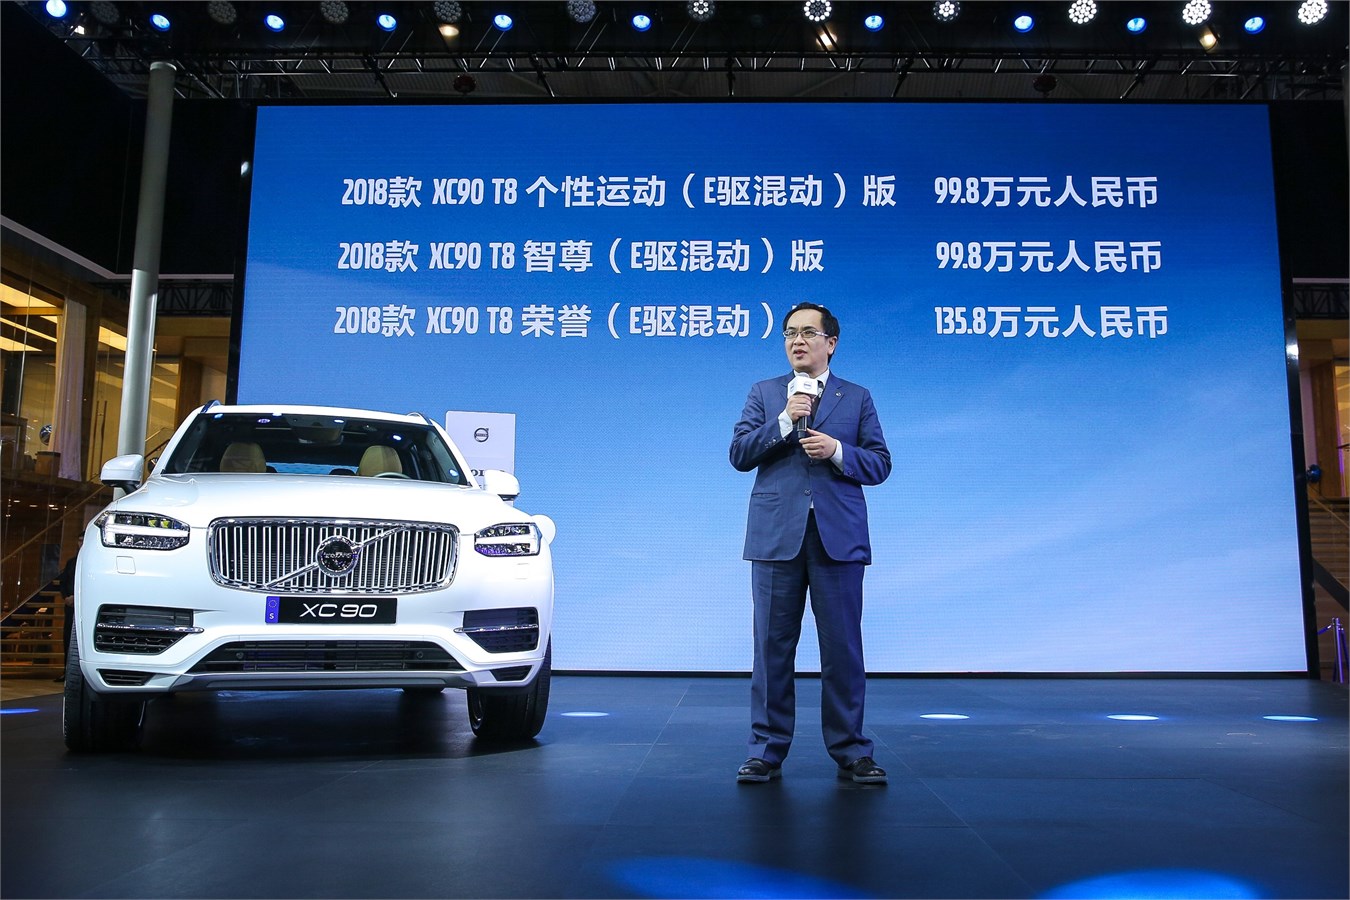 沃尔沃汽车集团大中华区销售公司总经理陈立哲先生公布2018款XC90 T8车型价格